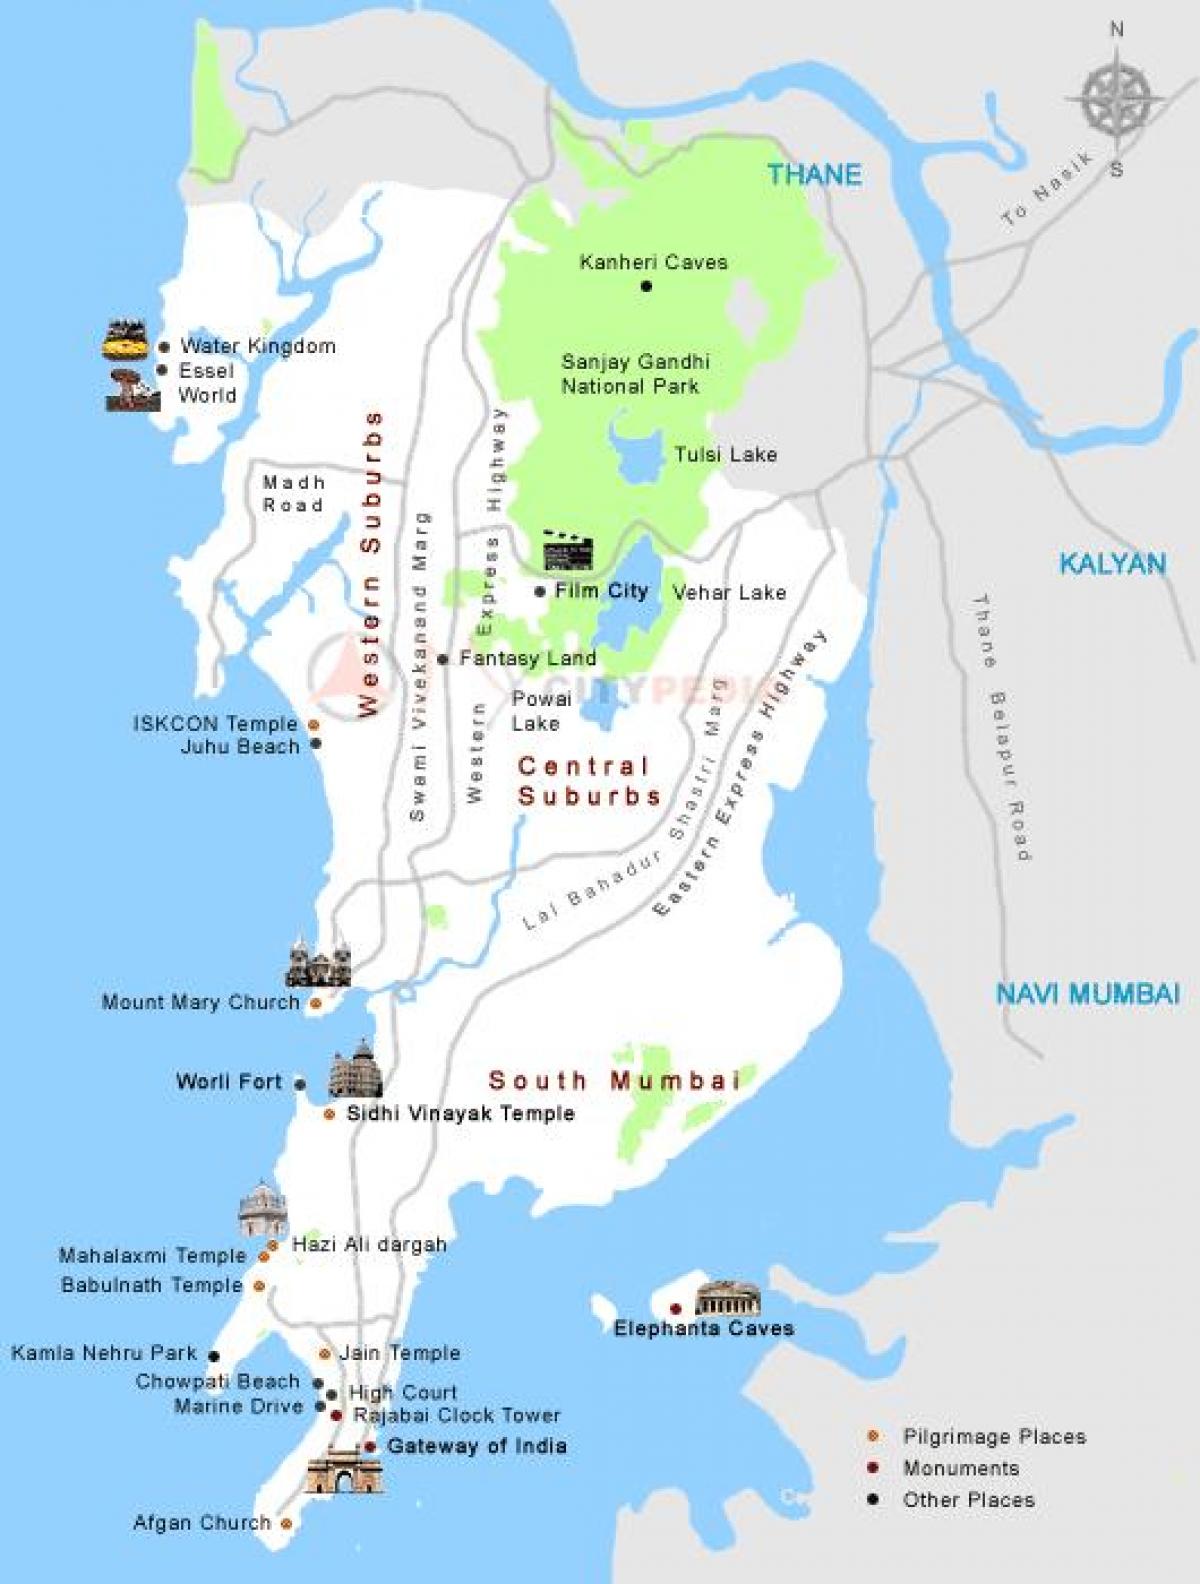 Мумбай darshan газар газрын зураг